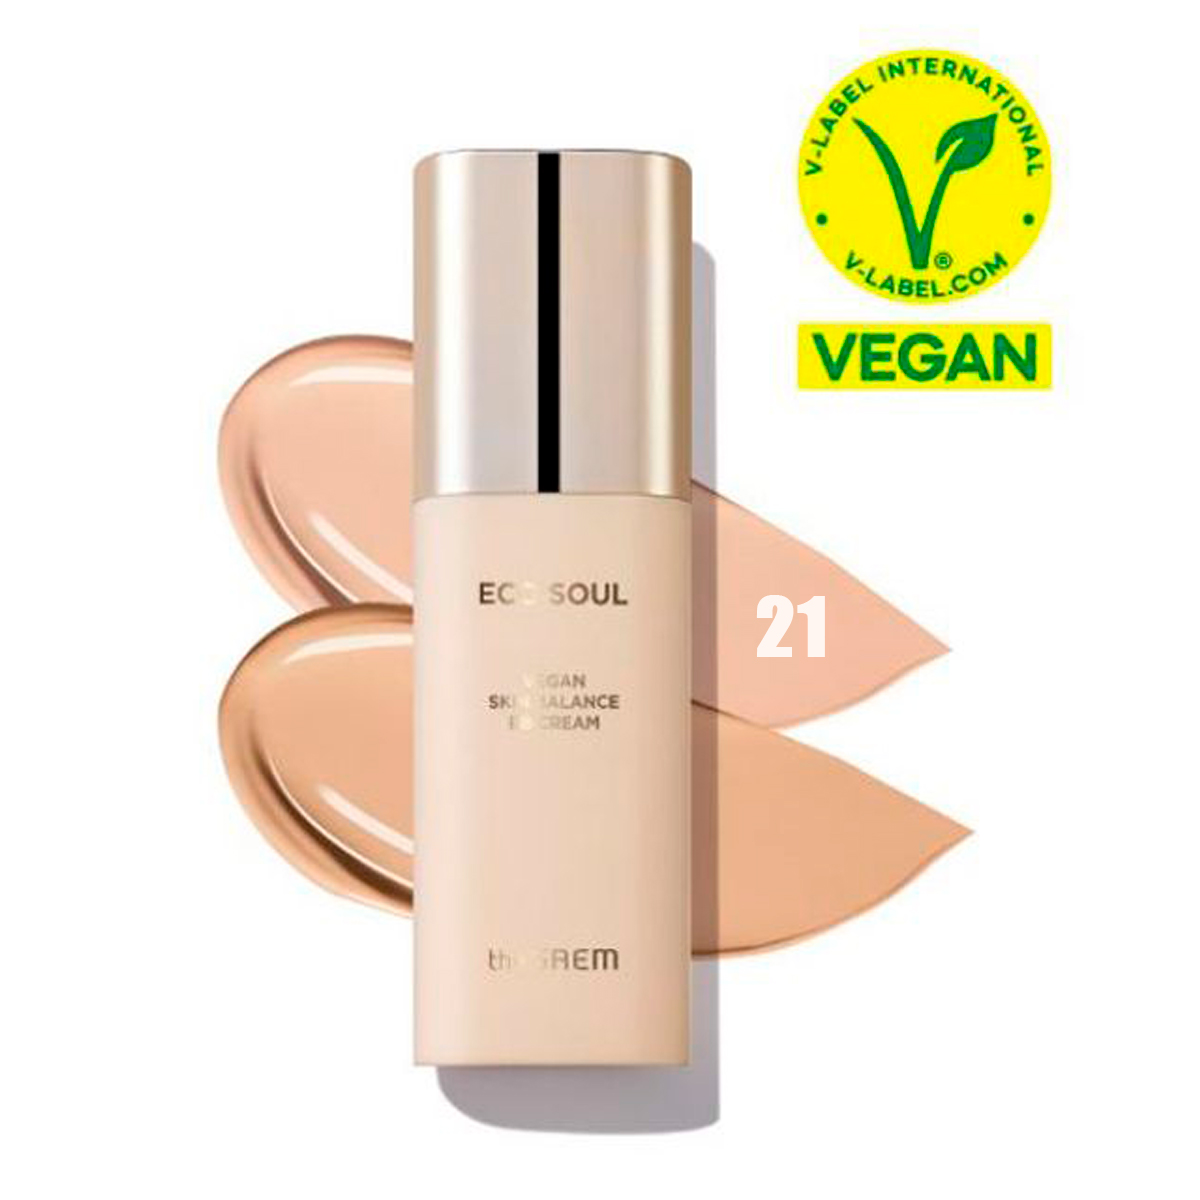 Веганский балансирующий BB крем The Saem Eco Soul Vegan Skin SPF50+ PA+++ 21 Light Beige